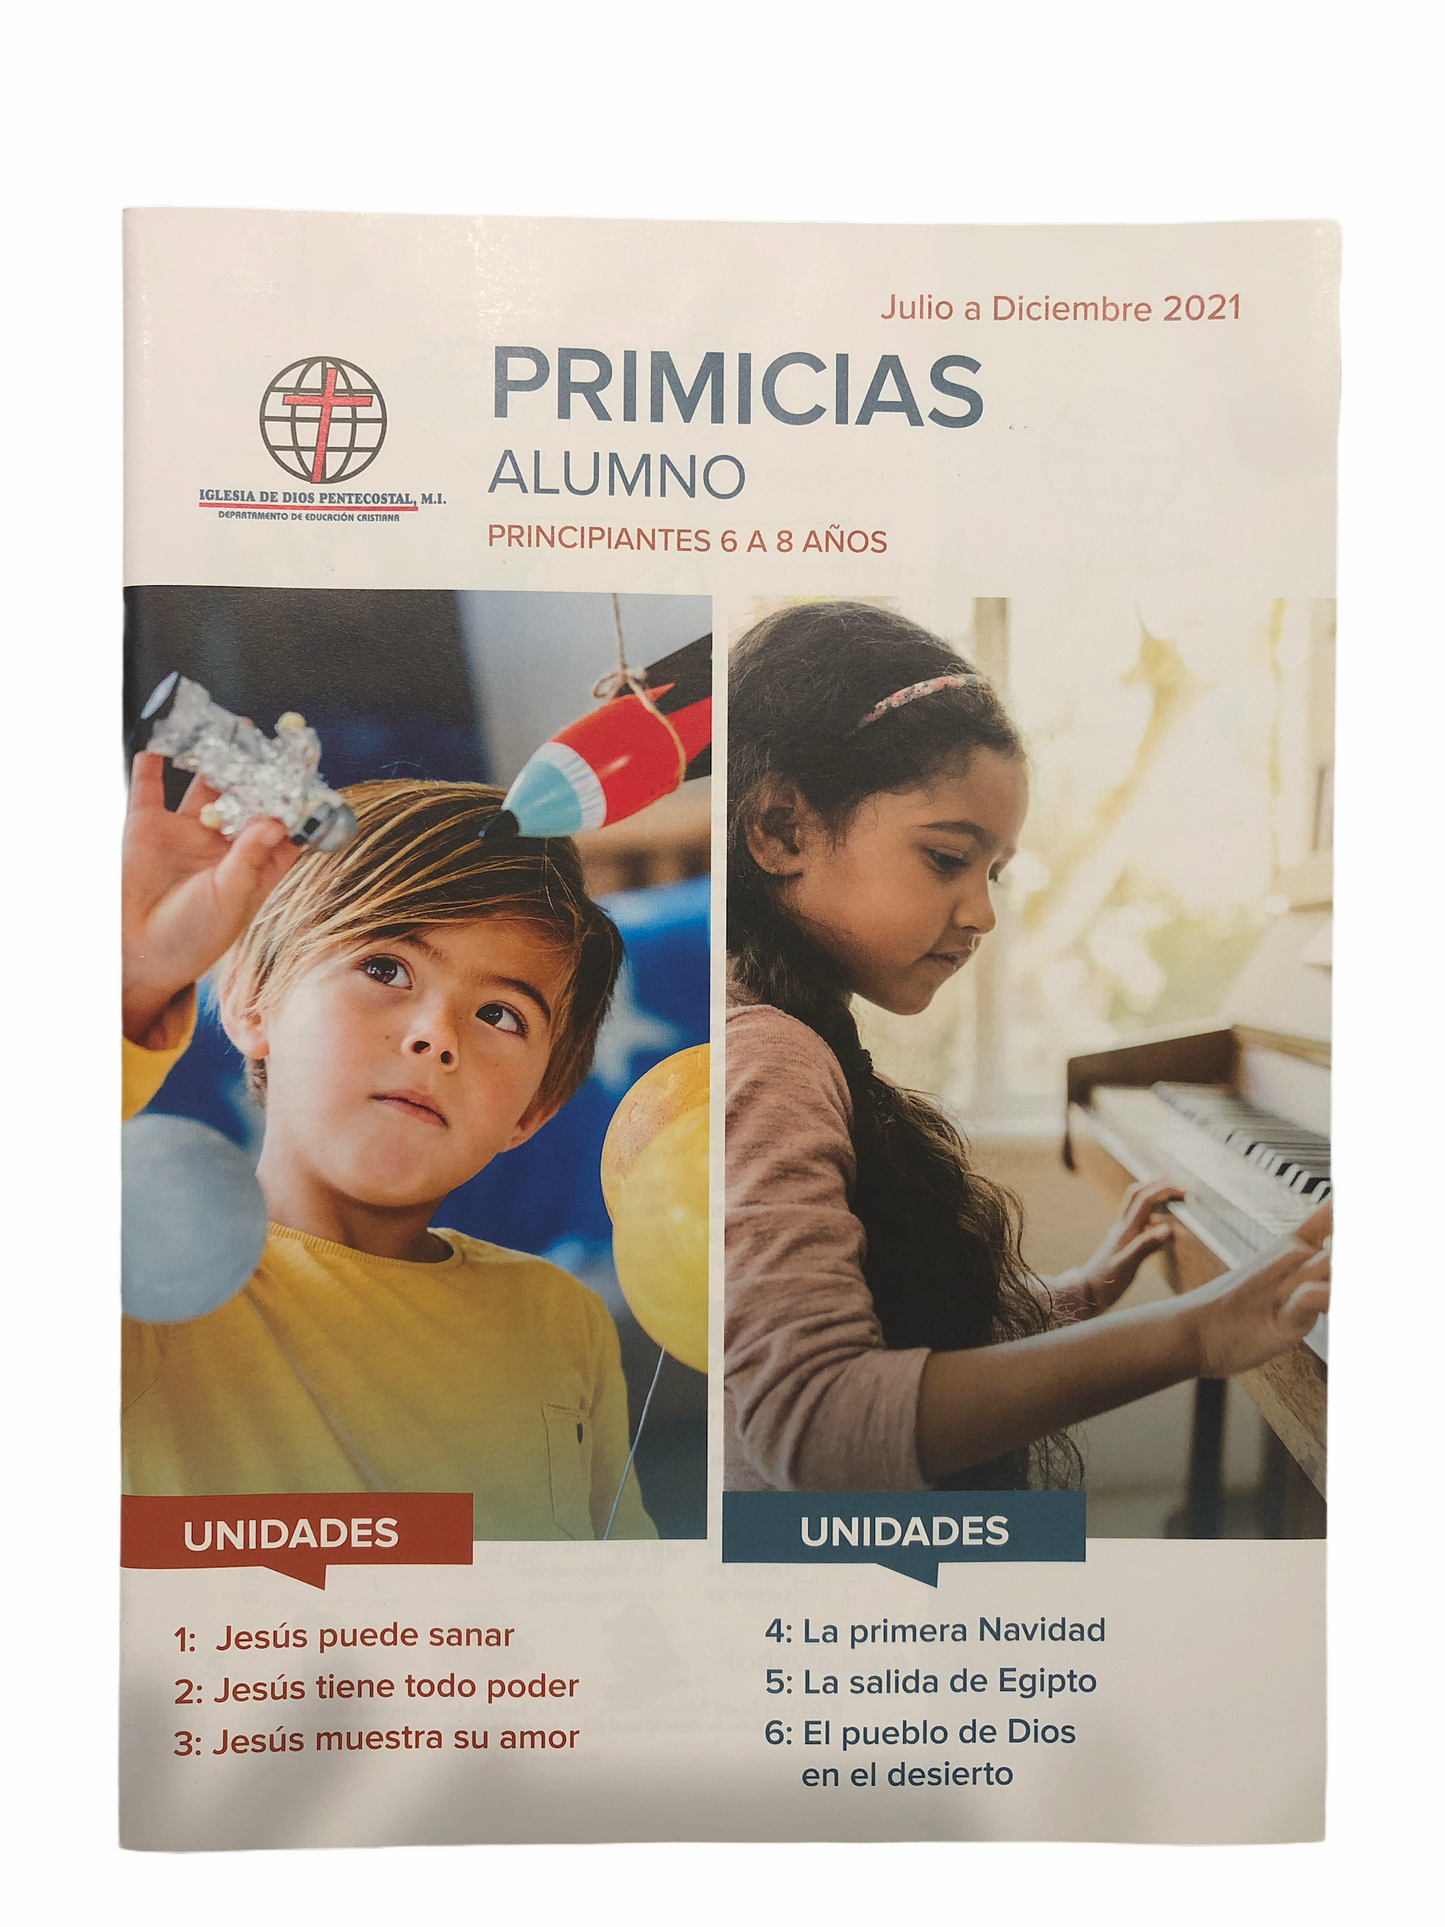 Primicias Alumno - Principiantes 6 a 8 años - Julio a Diciembre 2021